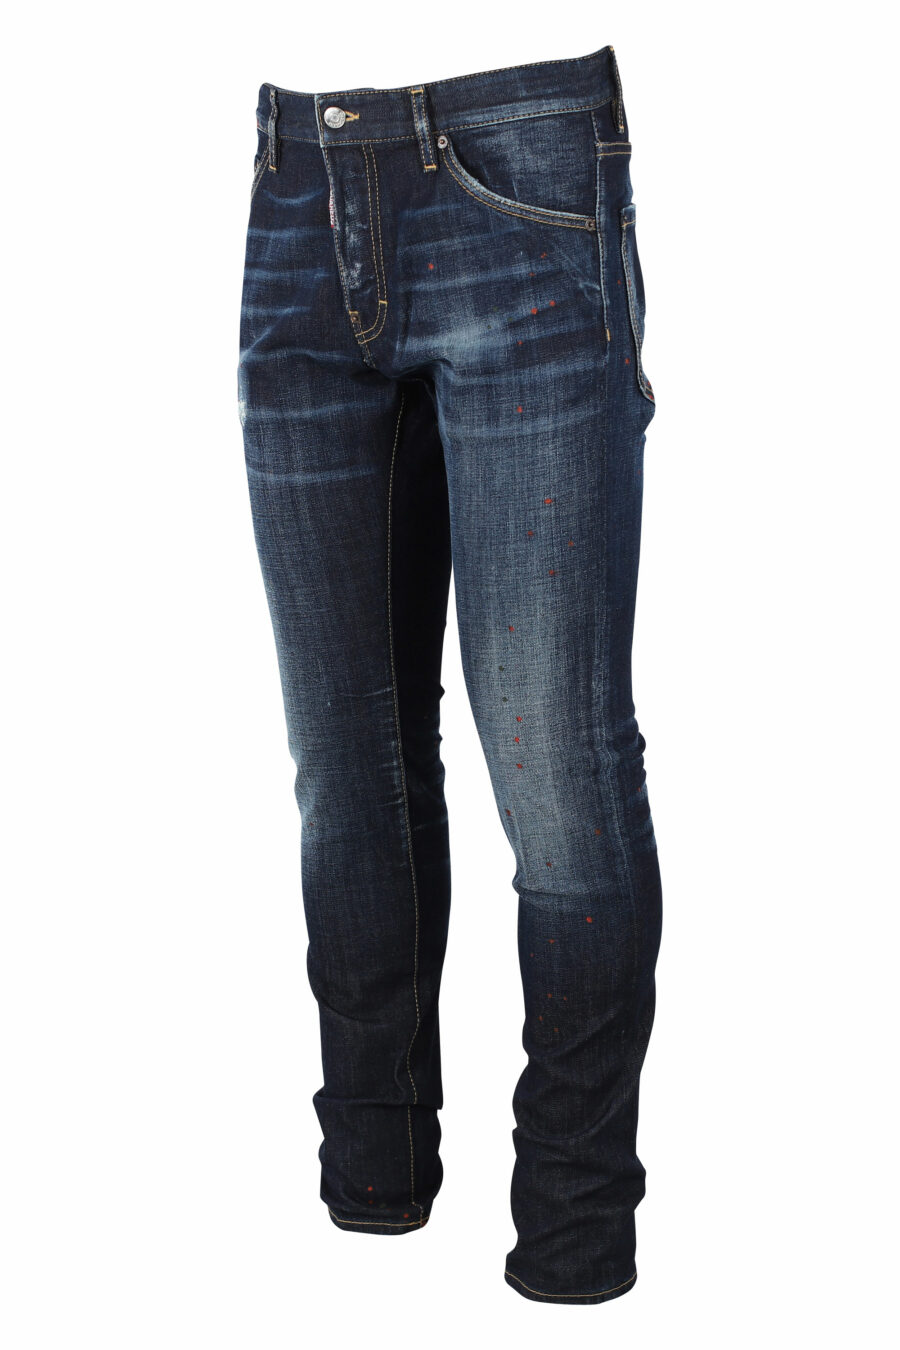 Pantalón vaquero "Cool Guy Jean" azul oscuro - IMG 0792